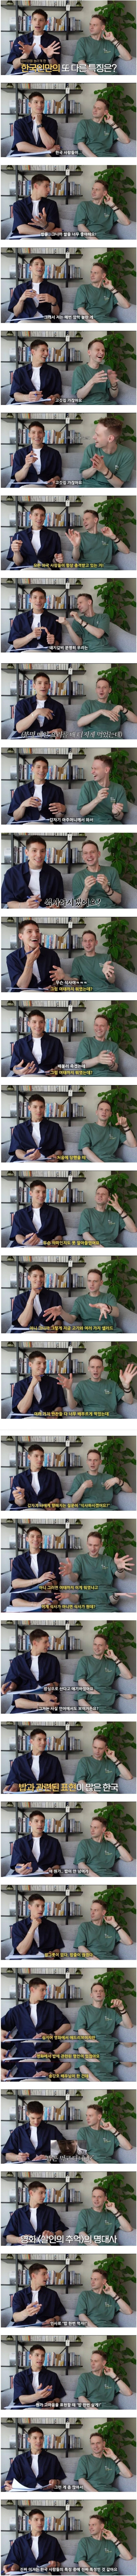 외국인들이 느끼는 한국인만의 특징